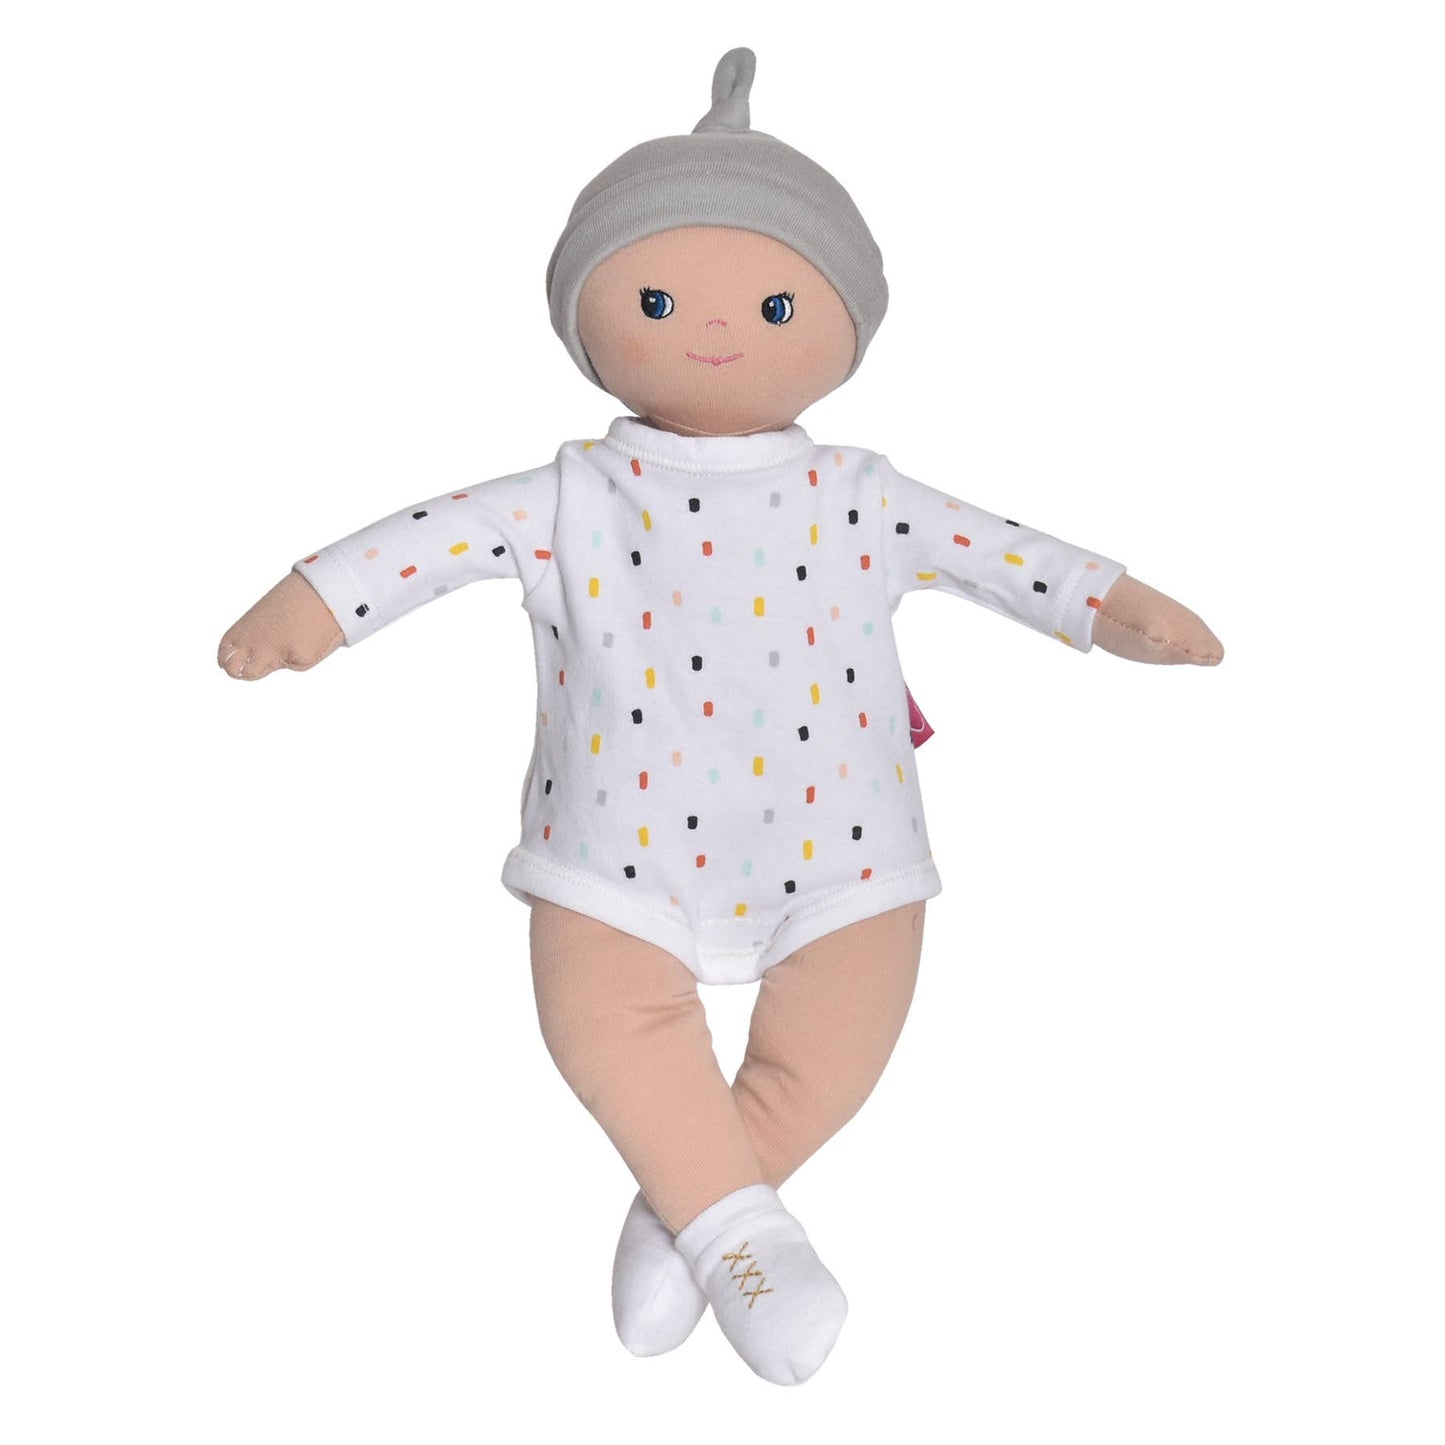 Kai - Gender Neutral Baby Doll, Tikiri Toys, eco-friendly Toys, Mountain Kids Toys